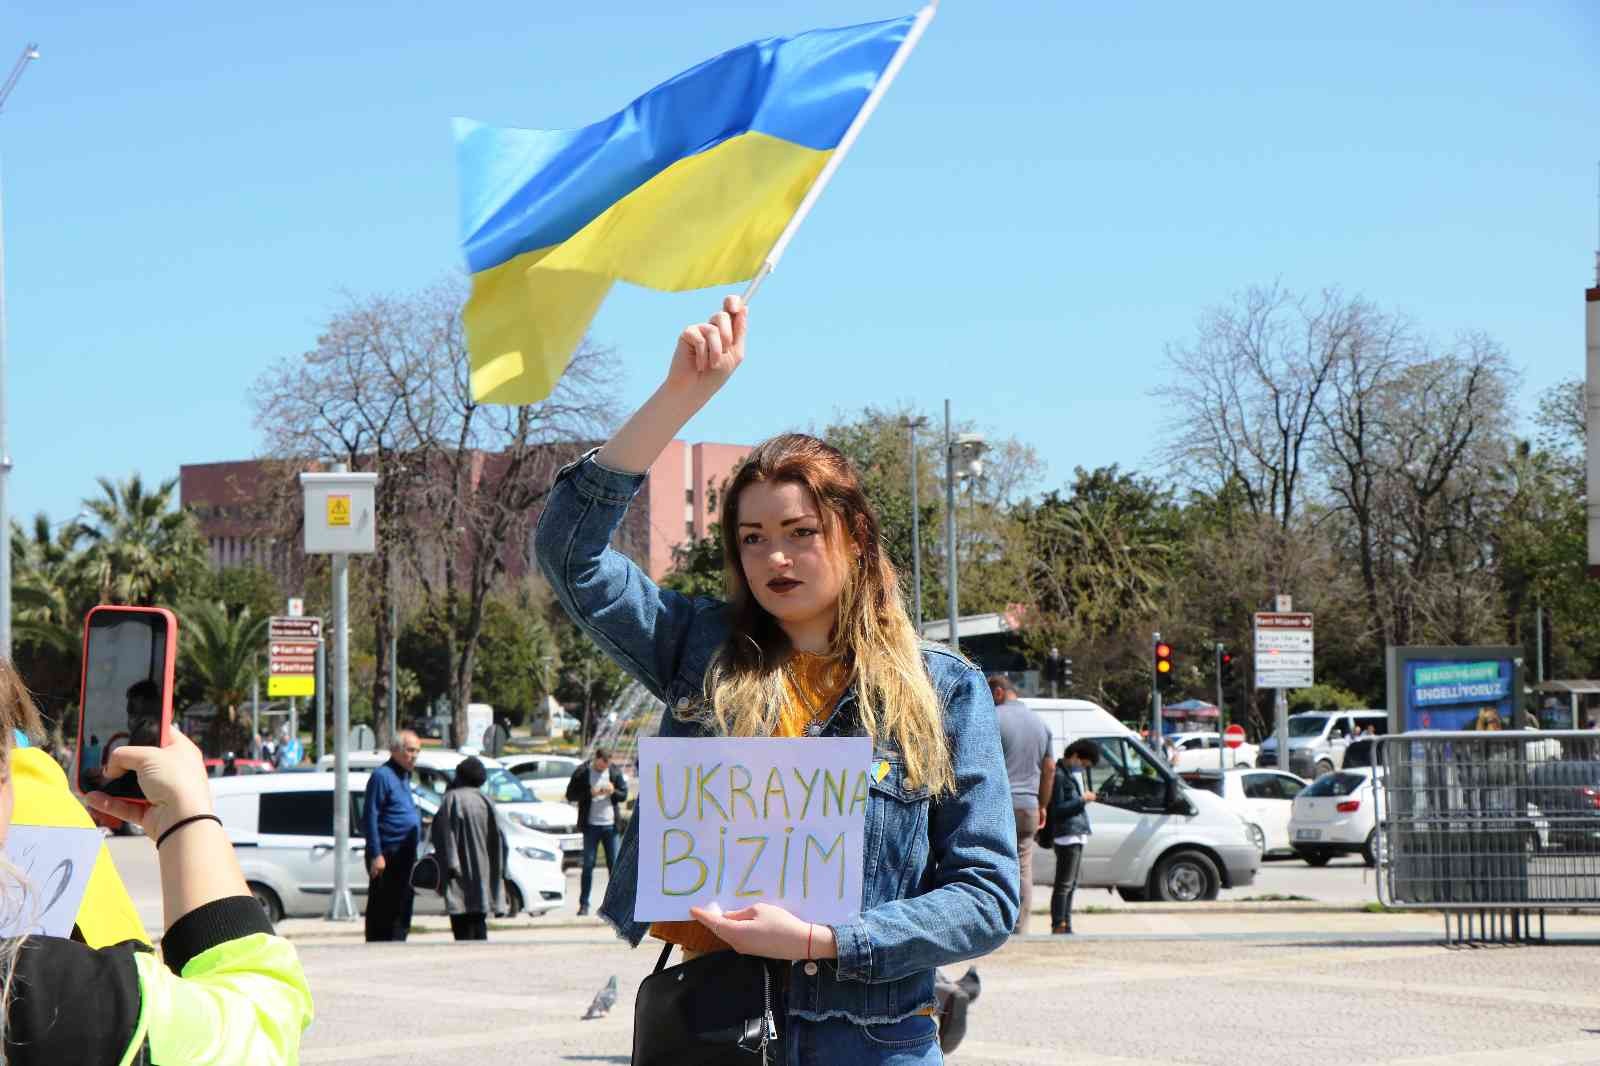 Ukraynalılar gözyaşlarıyla Samsun'dan dünyaya seslendi: "Bu savaşı bitirin"
